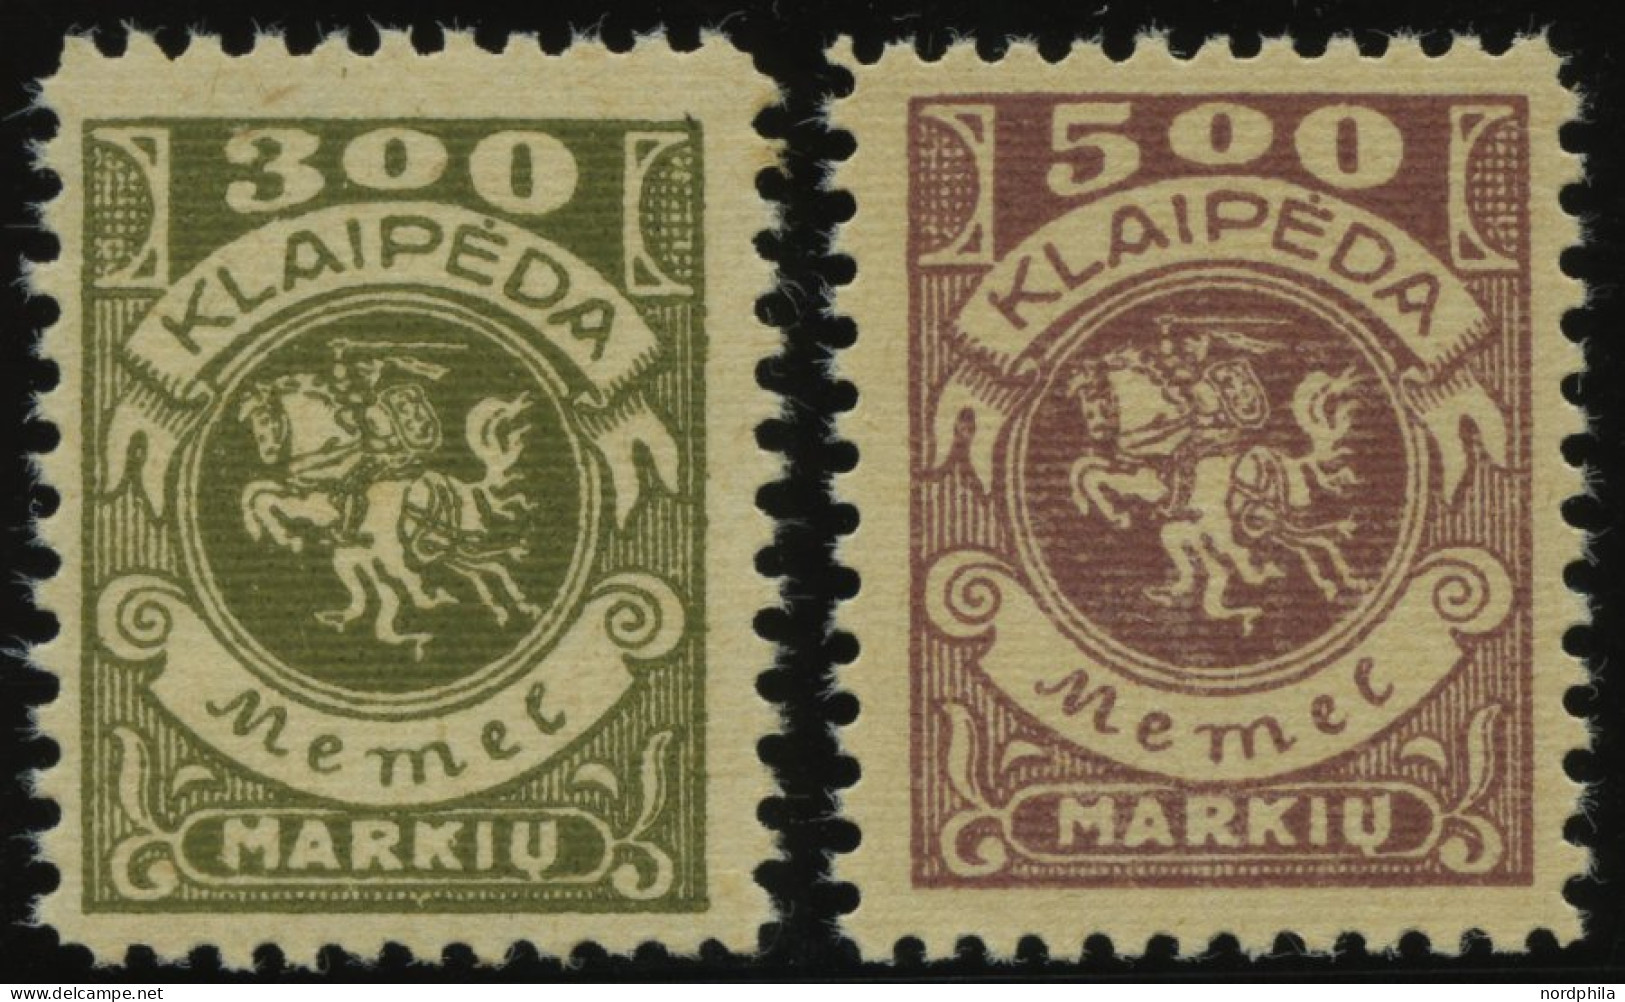 MEMELGEBIET 147,149 **, 1923, 300 M. Oliv Und 500 M. Graulila, Postfrisch, 2 Prachtwerte, Mi. 180.- - Klaipeda 1923